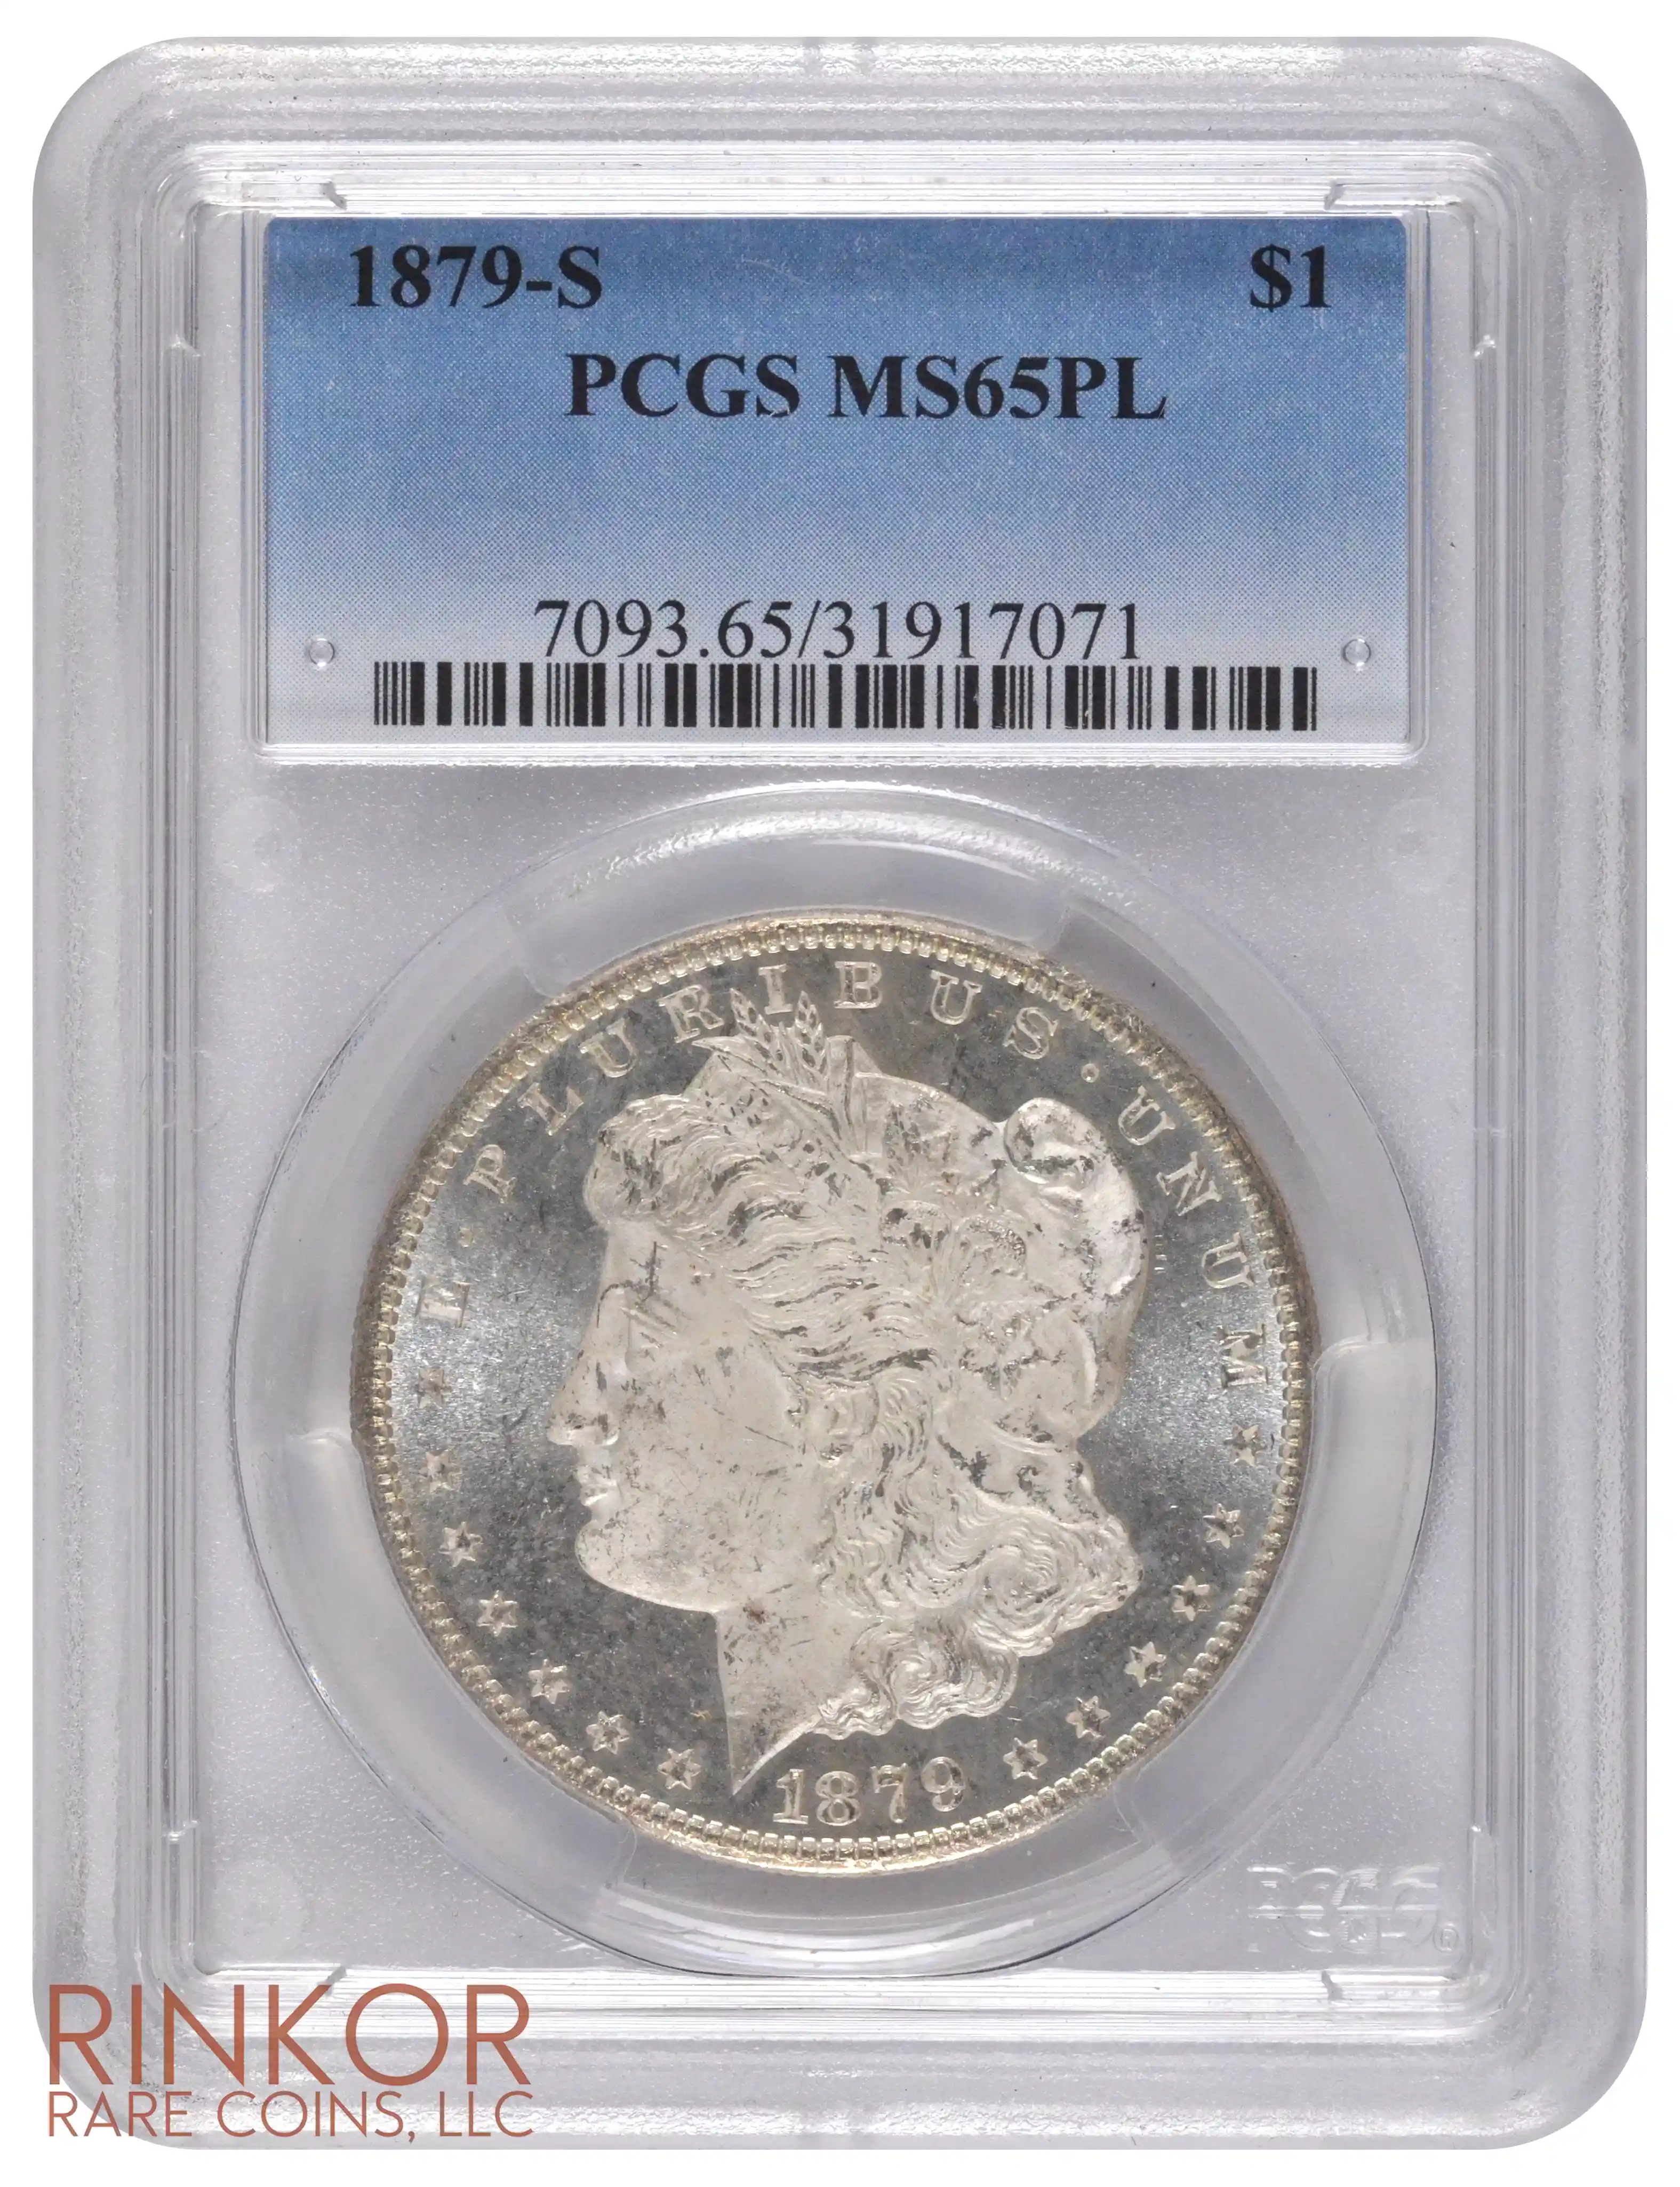 1879-S $1 PCGS MS 65 PL